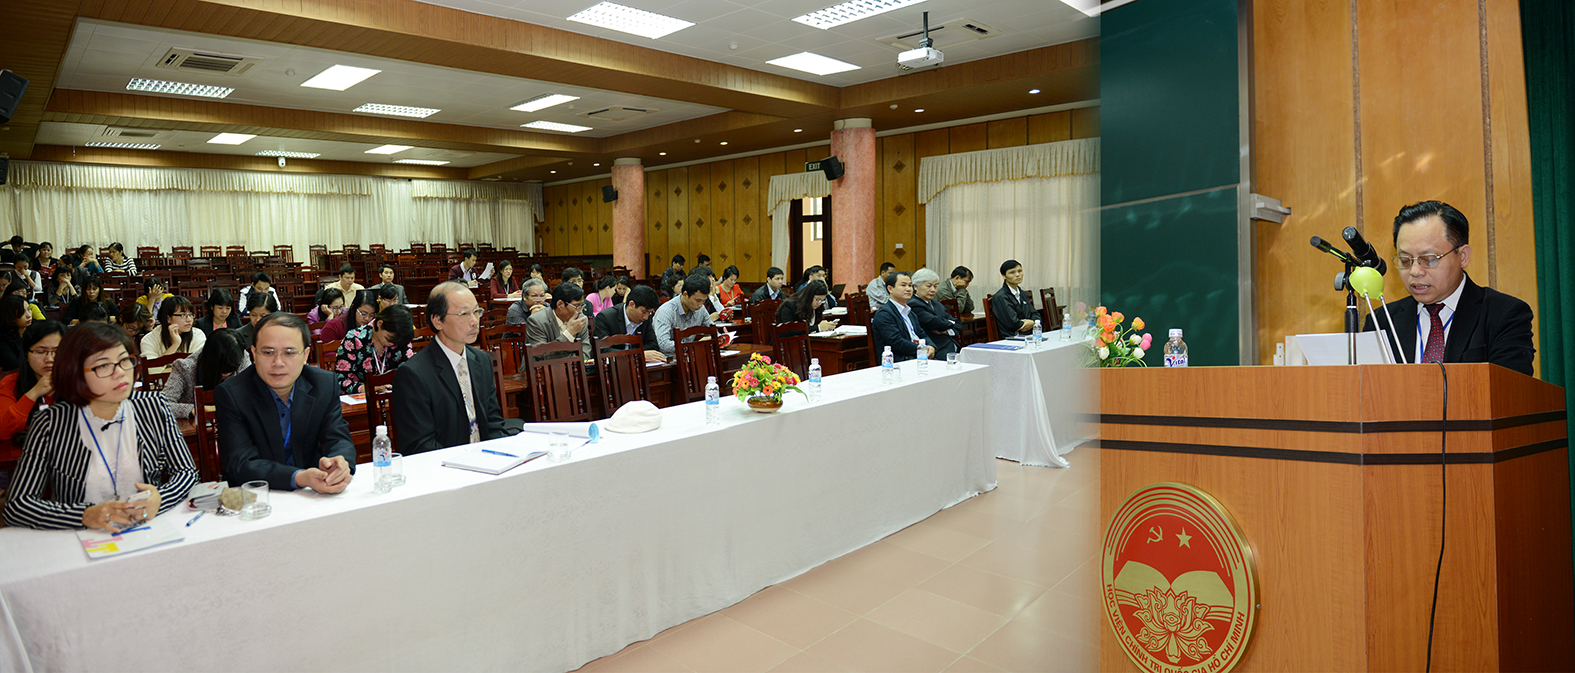 Khai giảng Lớp tập huấn chuyên sâu Hiến pháp nước Cộng hòa xã hội chủ nghĩa Việt Nam 2013